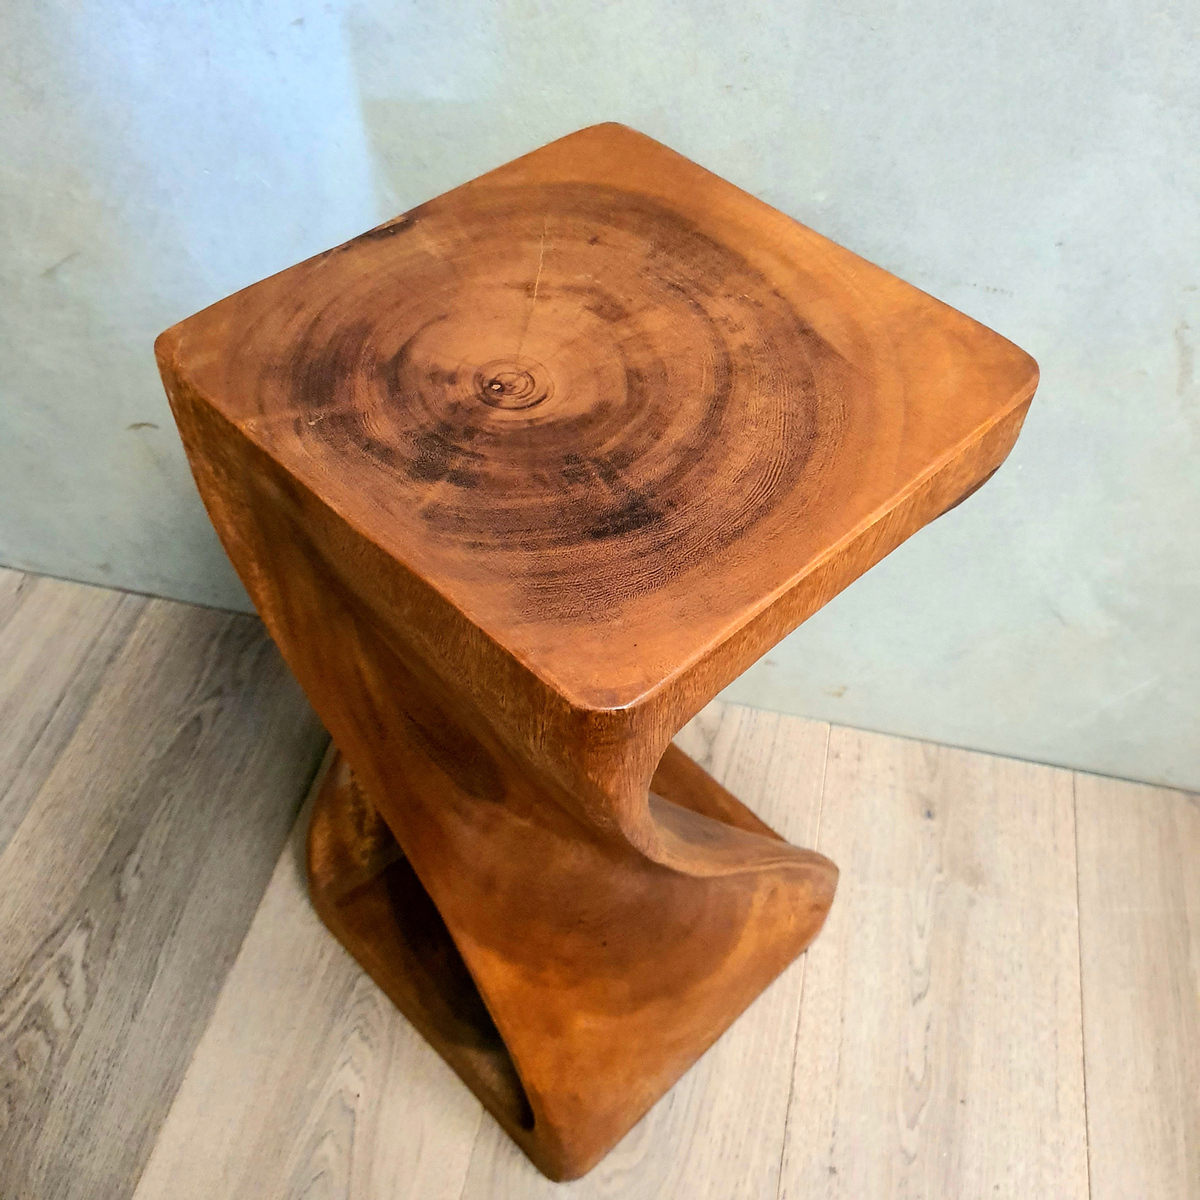 Raintree Twist Wood Stump Stool and Corner Table